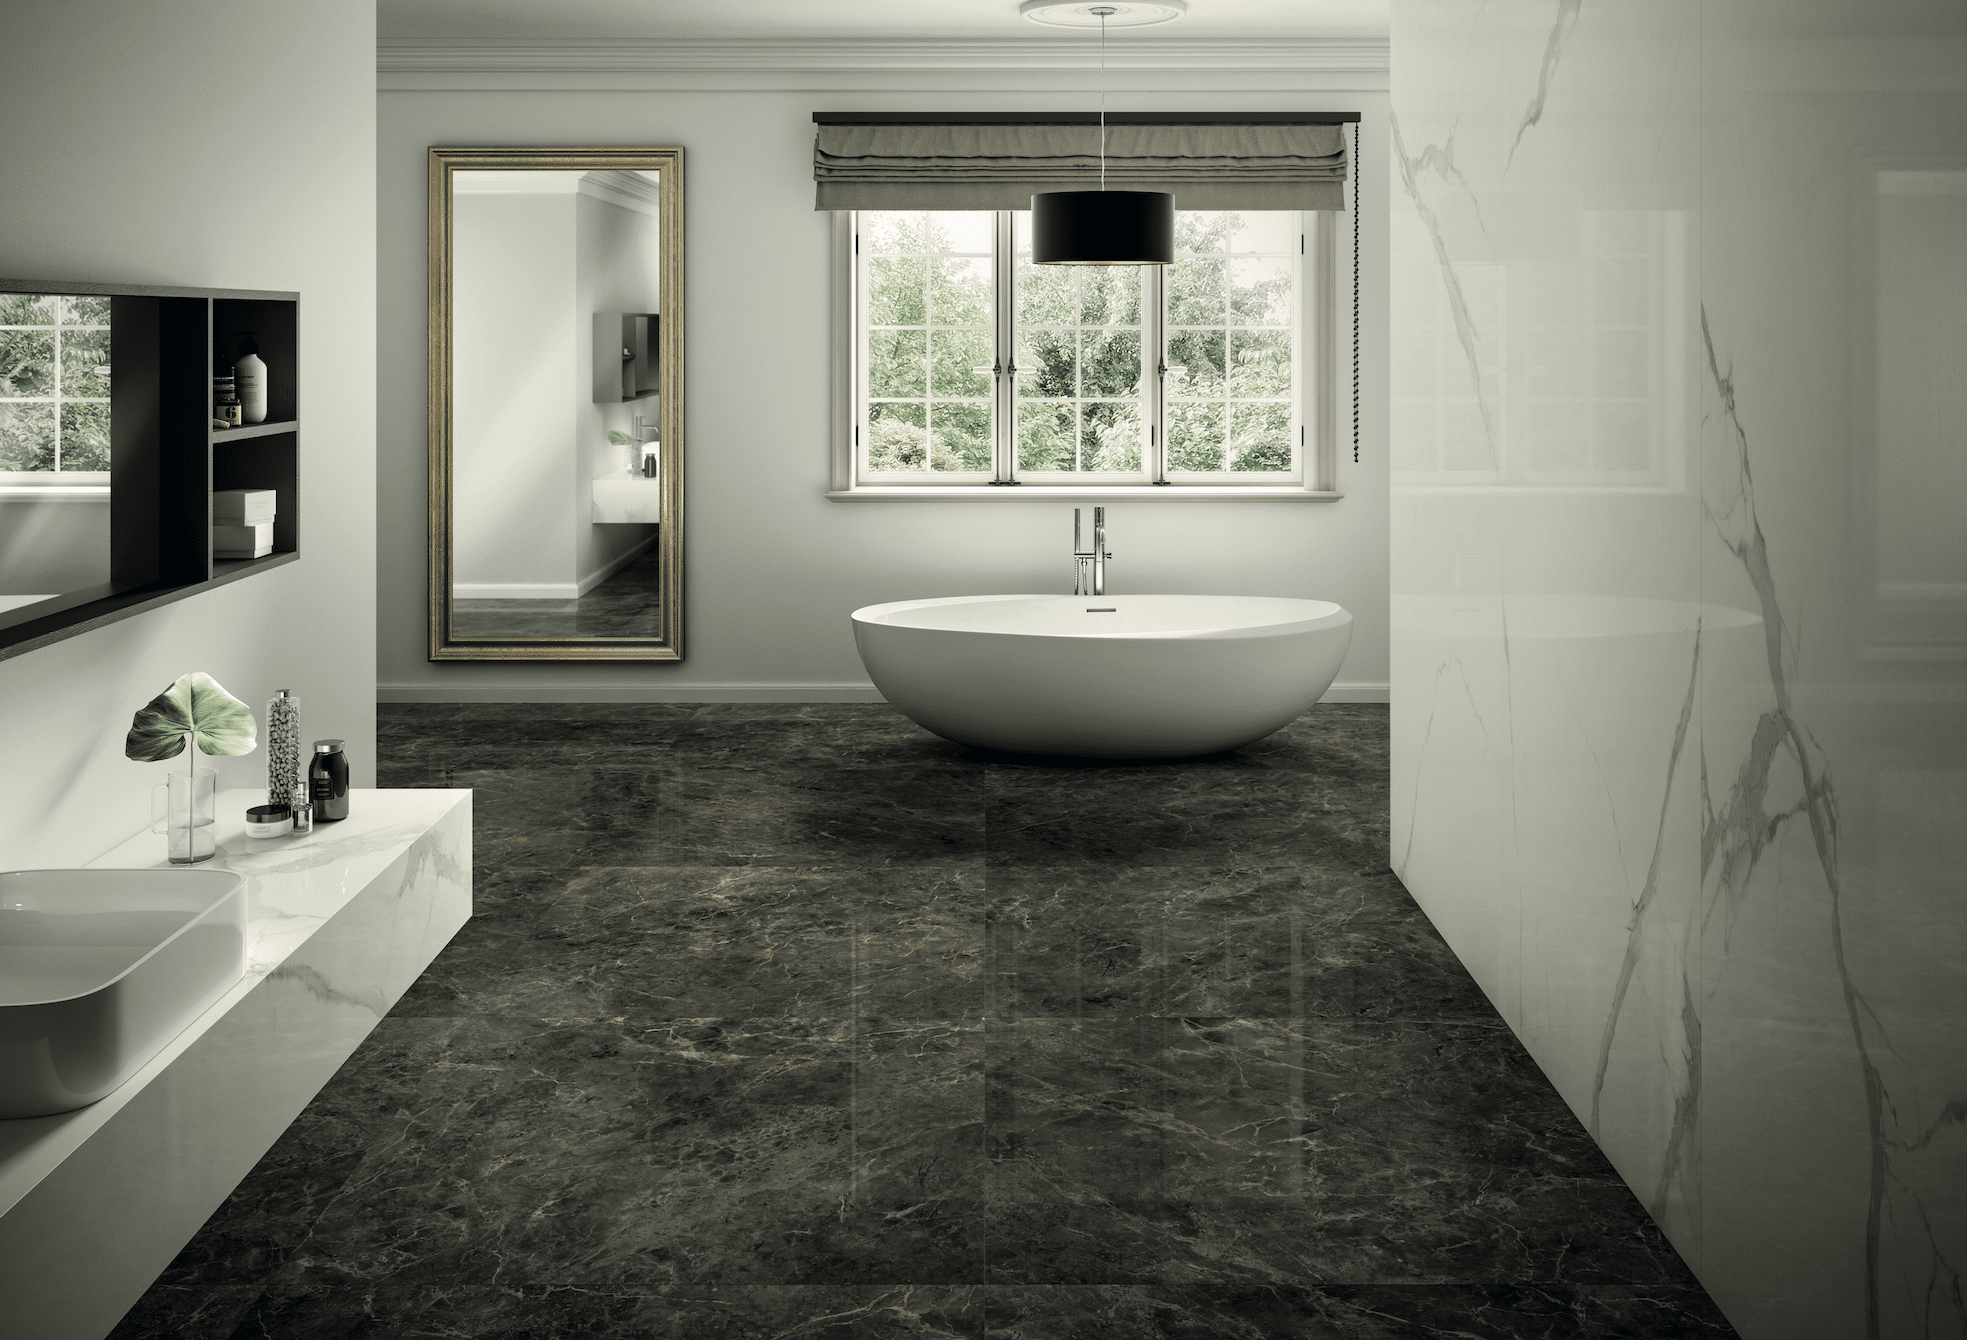 Fliesendorf präsentiert ein Badezimmer aus schwarzem und weißem Marmor an Wand und Decke, einer freistehenden Badewanne und Waschtisch, ebenfalls aus weissem Marmor.